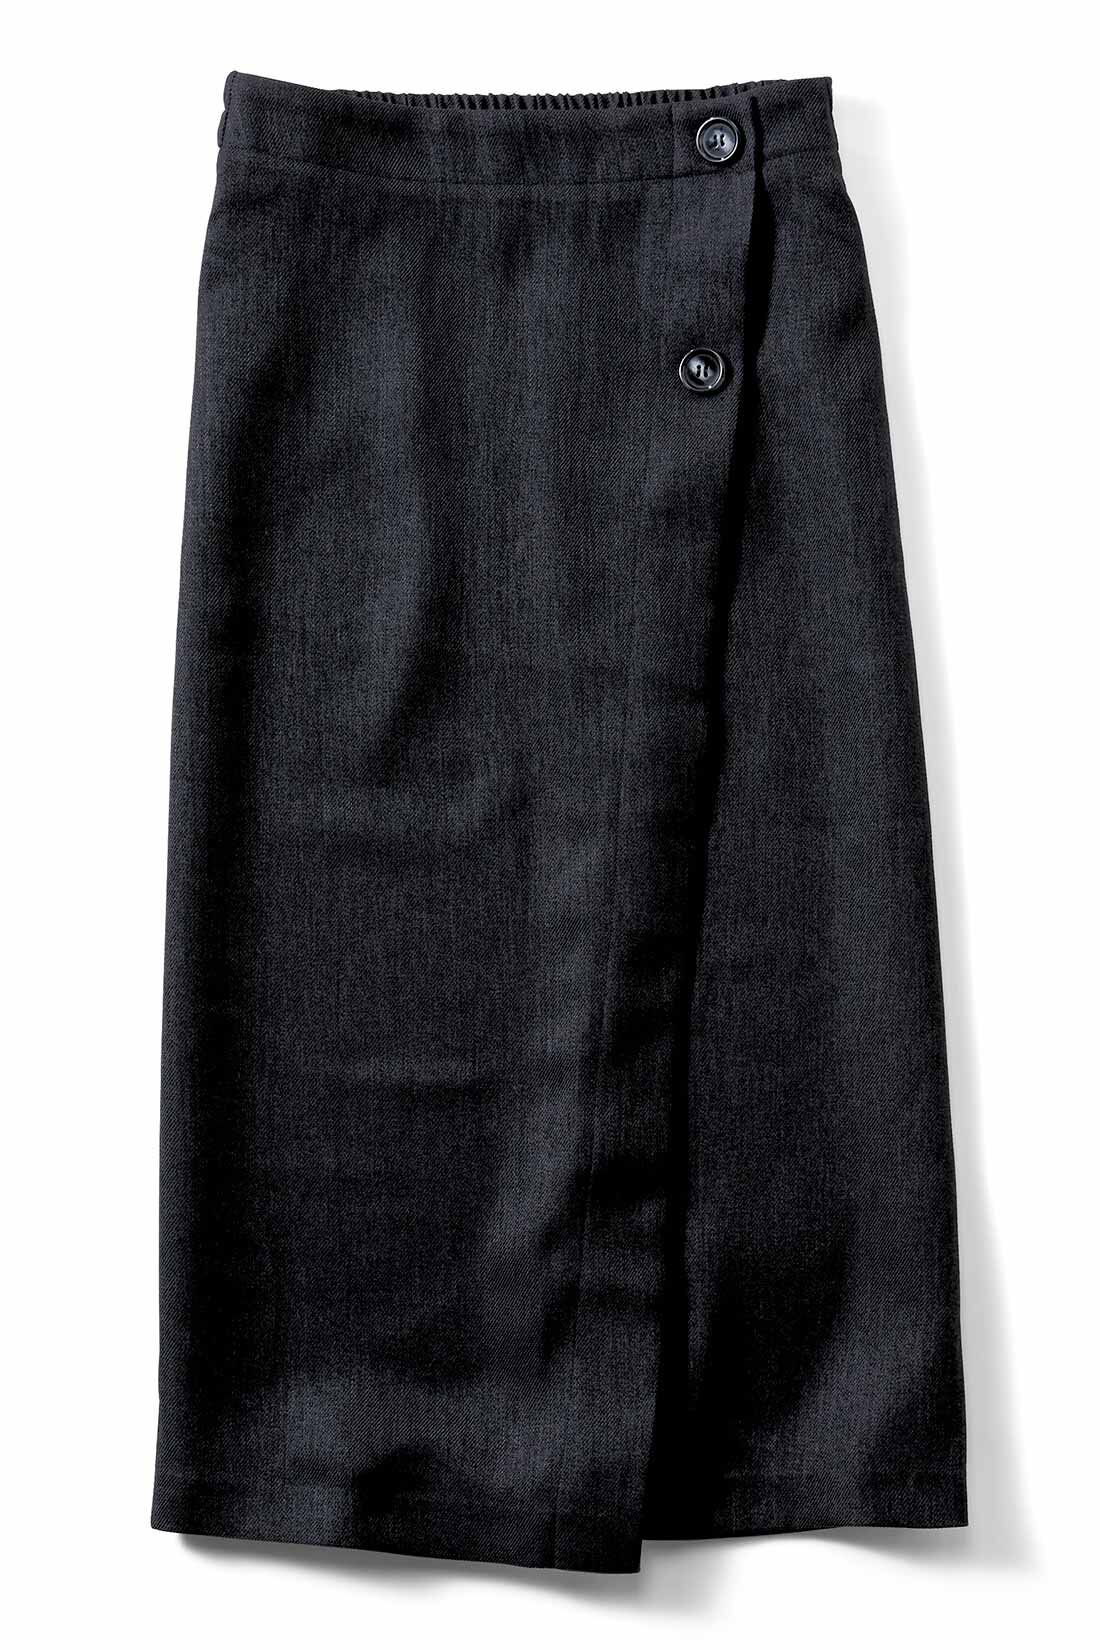 IEDIT[イディット]　ラップ風デザインで着映える 細見えIラインスカート|〈ブラック〉